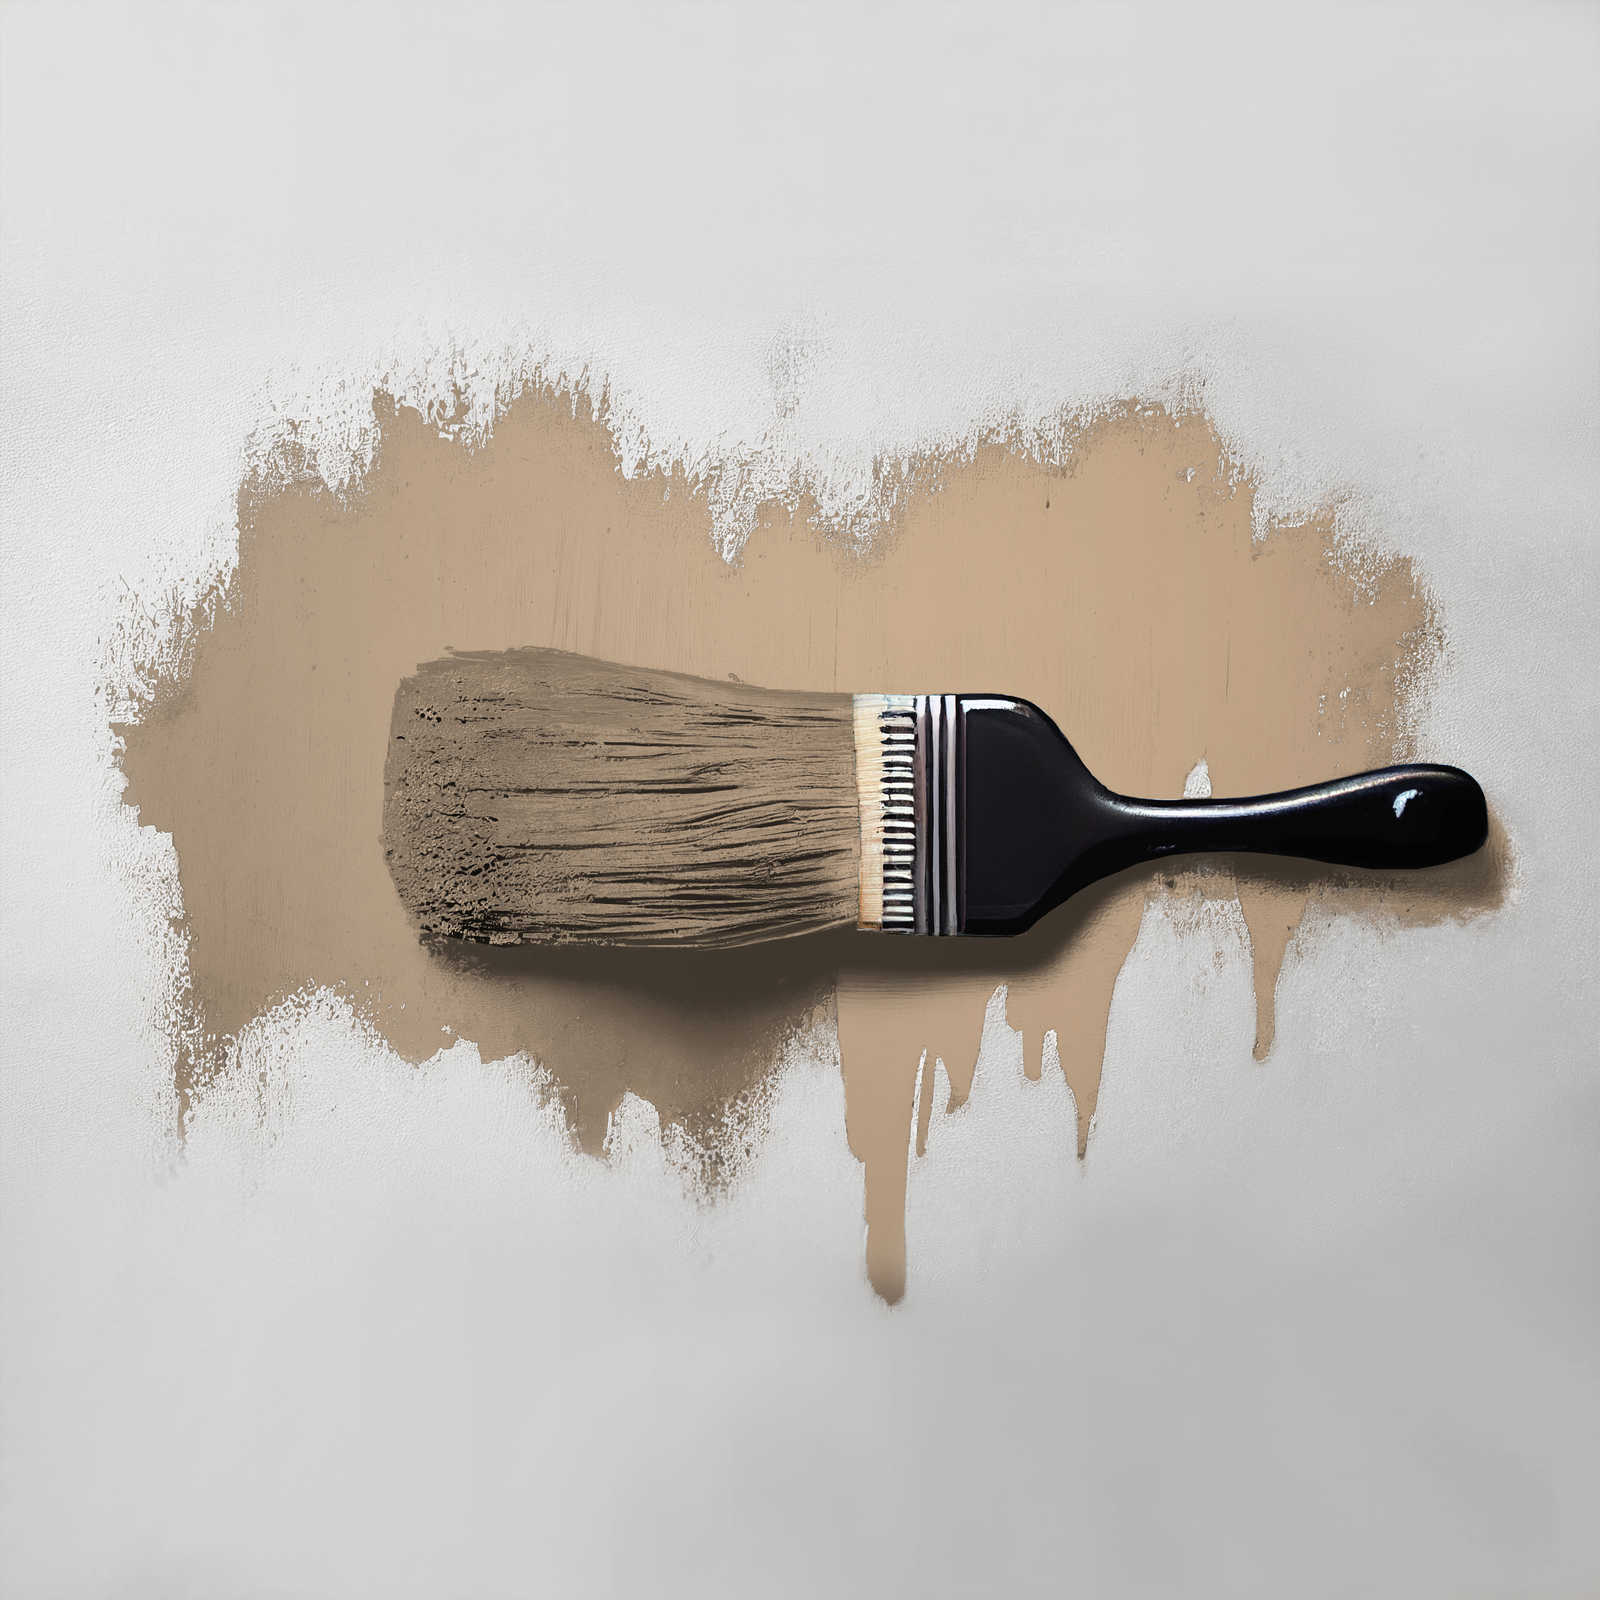             Peinture murale TCK6005 »Friendly Fennel« en beige-brun confortable – 5,0 litres
        